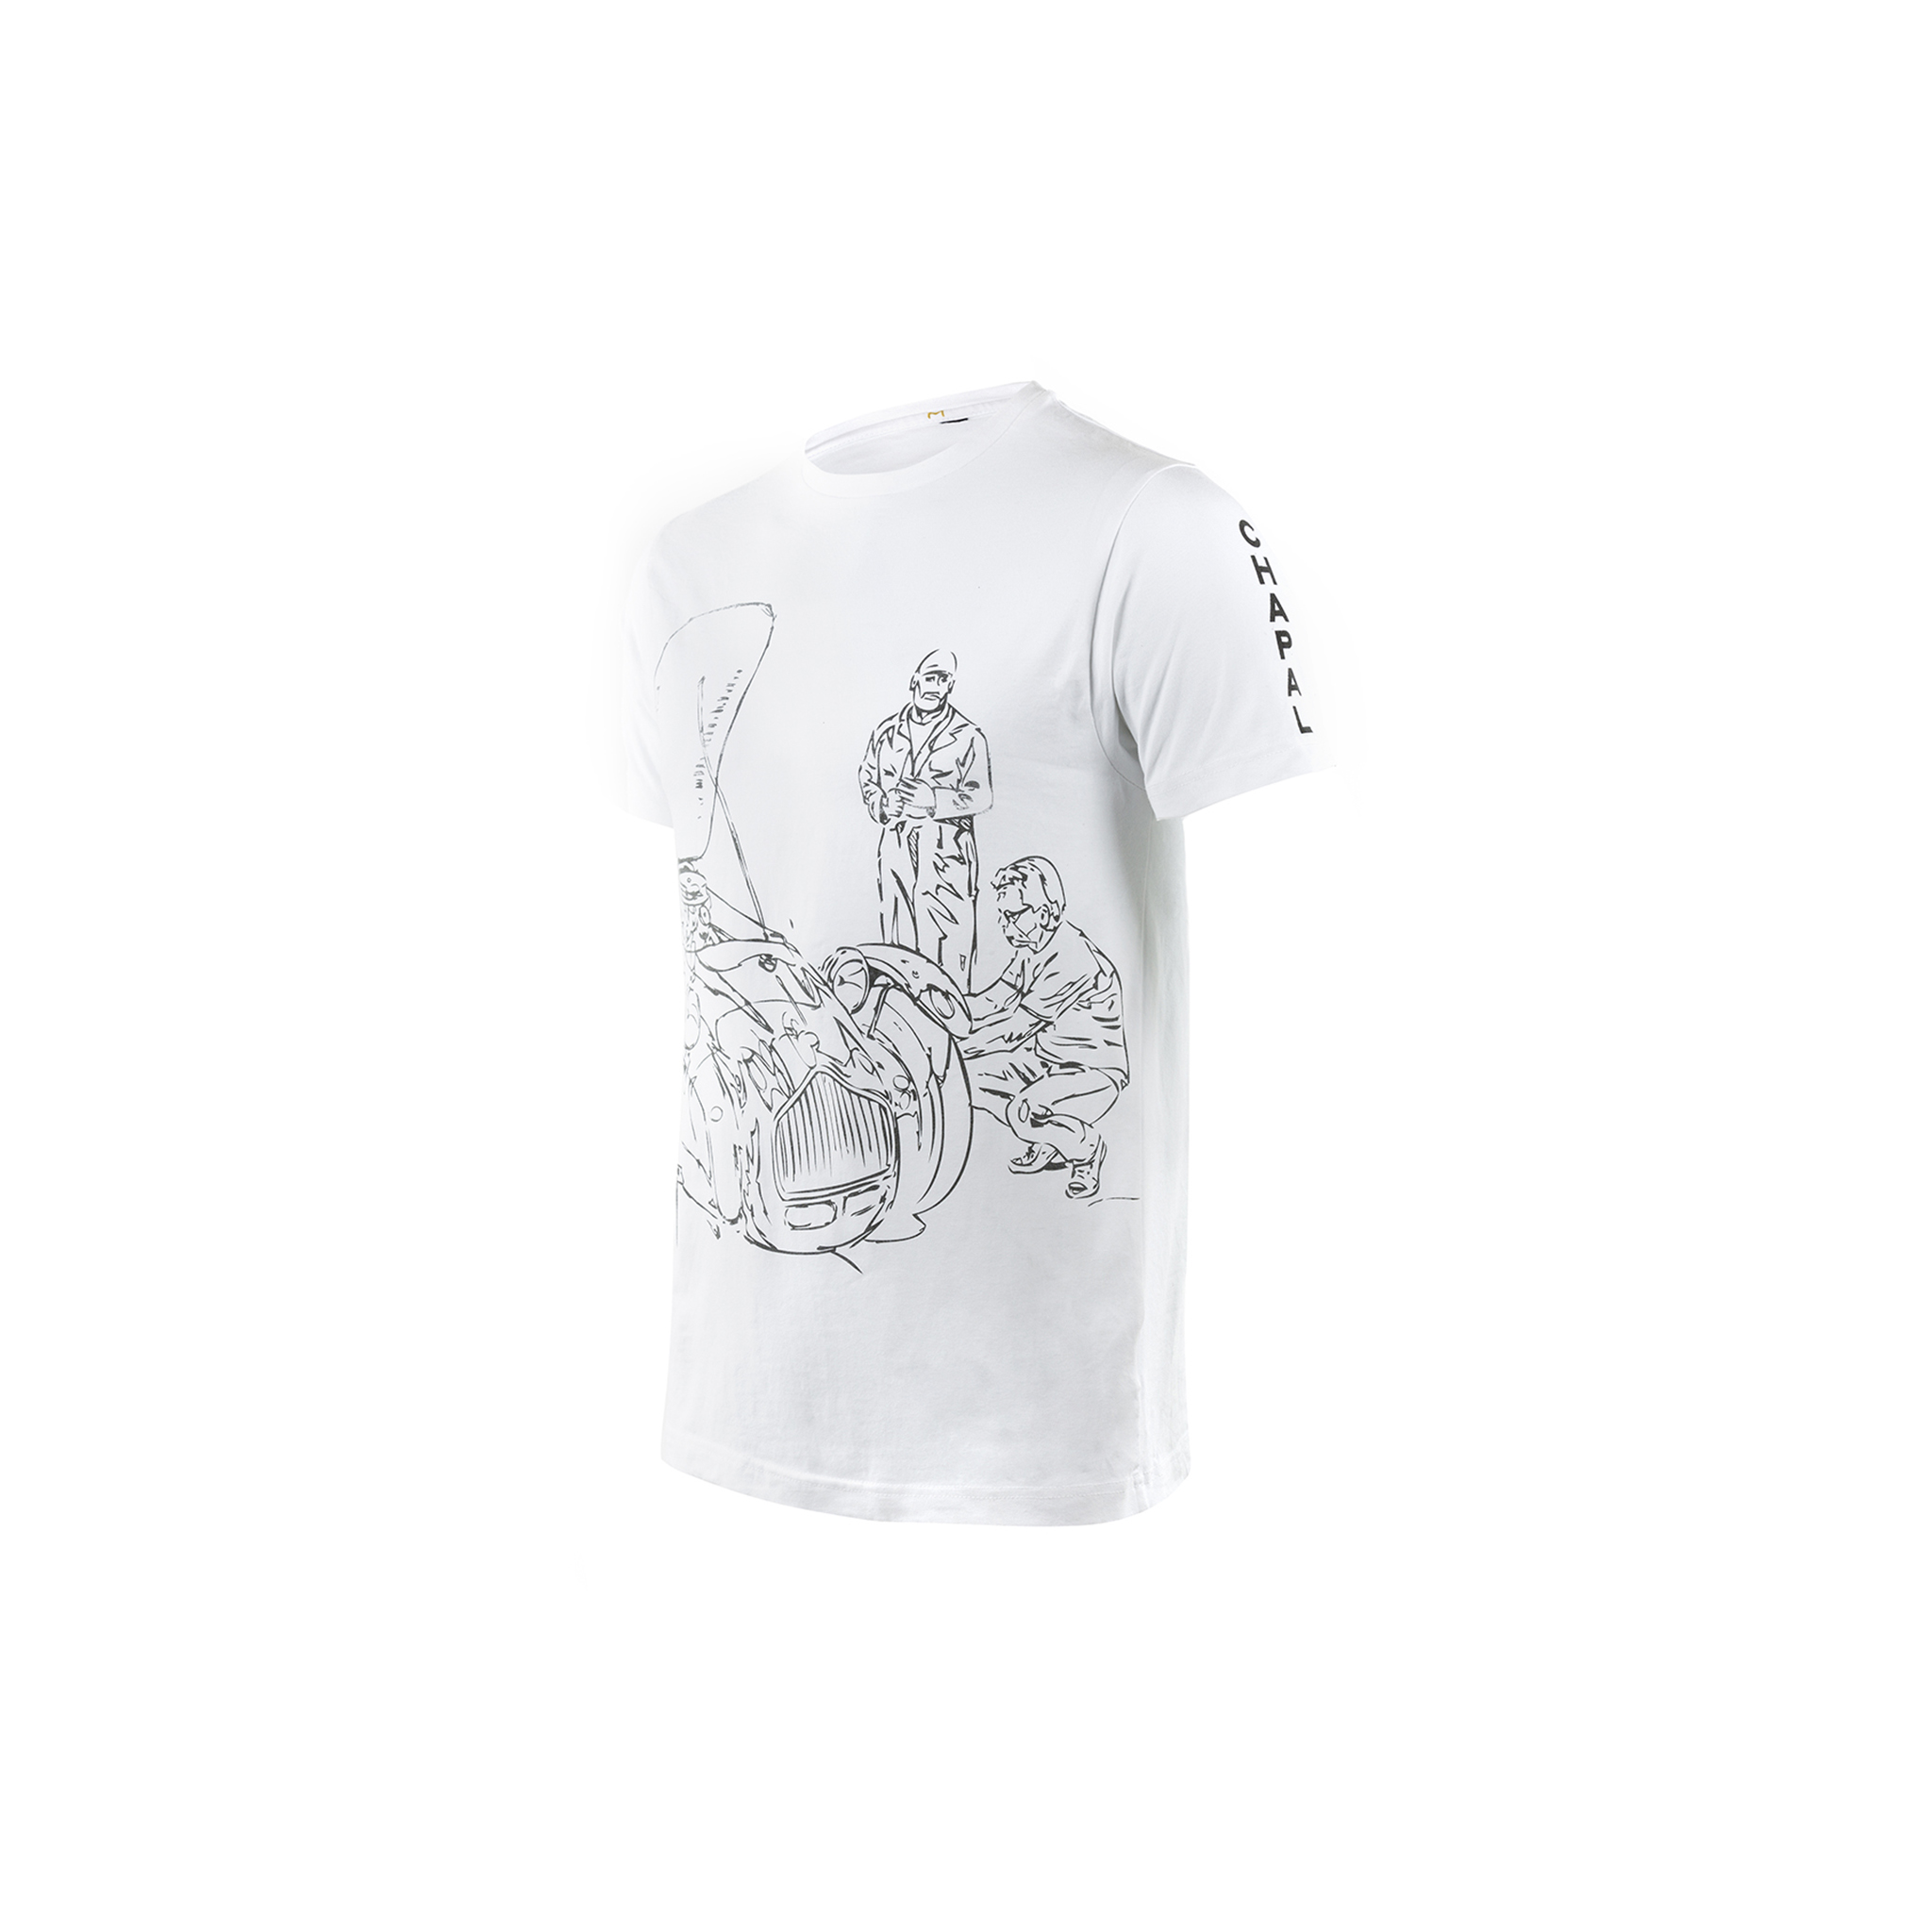 T-shirt Allard - Jersey de coton - Couleur blanc